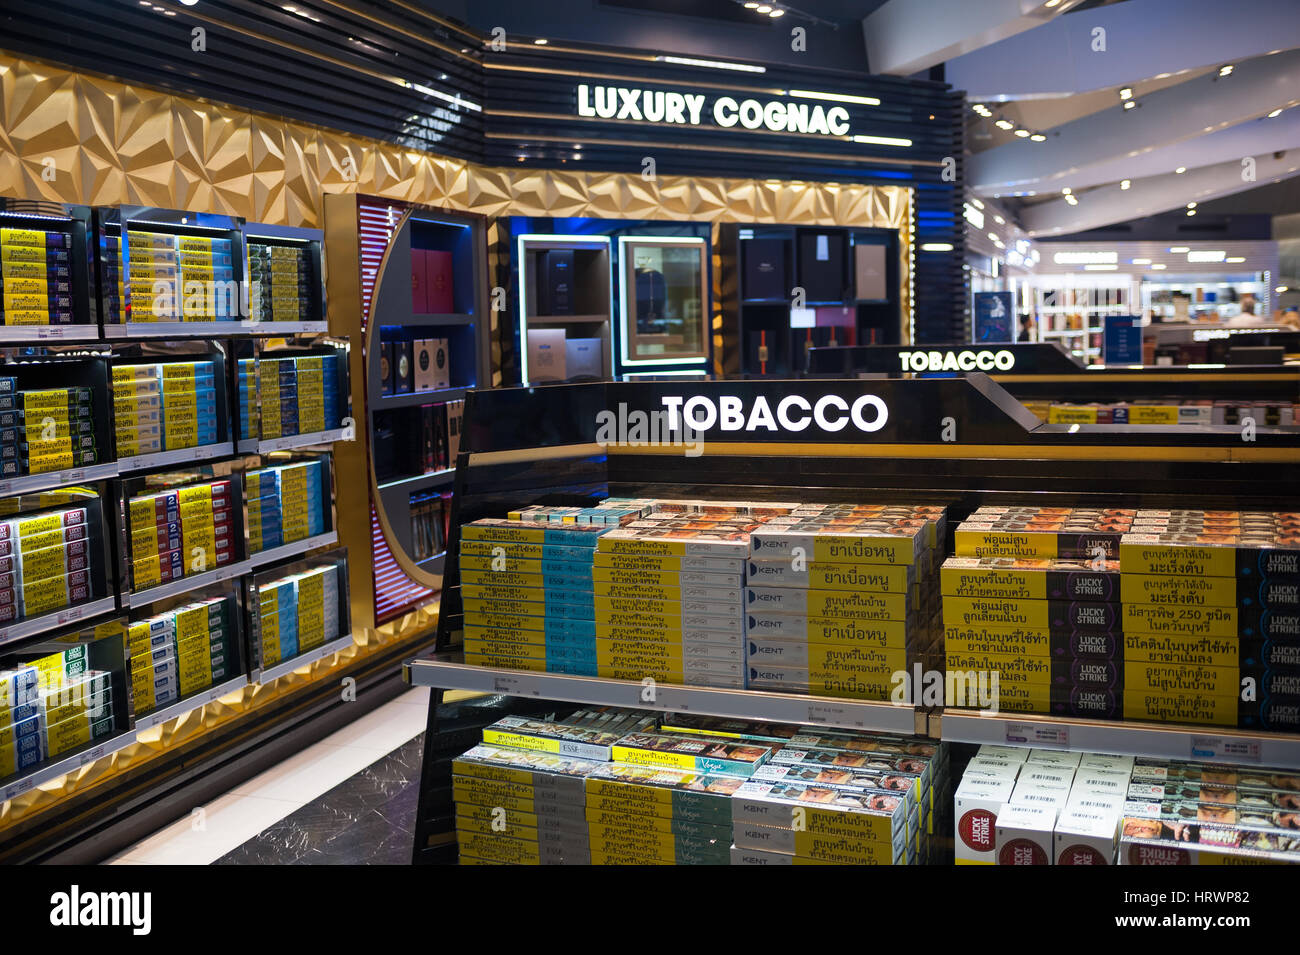 08.02.2017, Bangkok, Thailand, Asia - Shelves full of tobacco products in a duty free shop at Bangkok's Suvarnabhumi Airport. Stock Photo